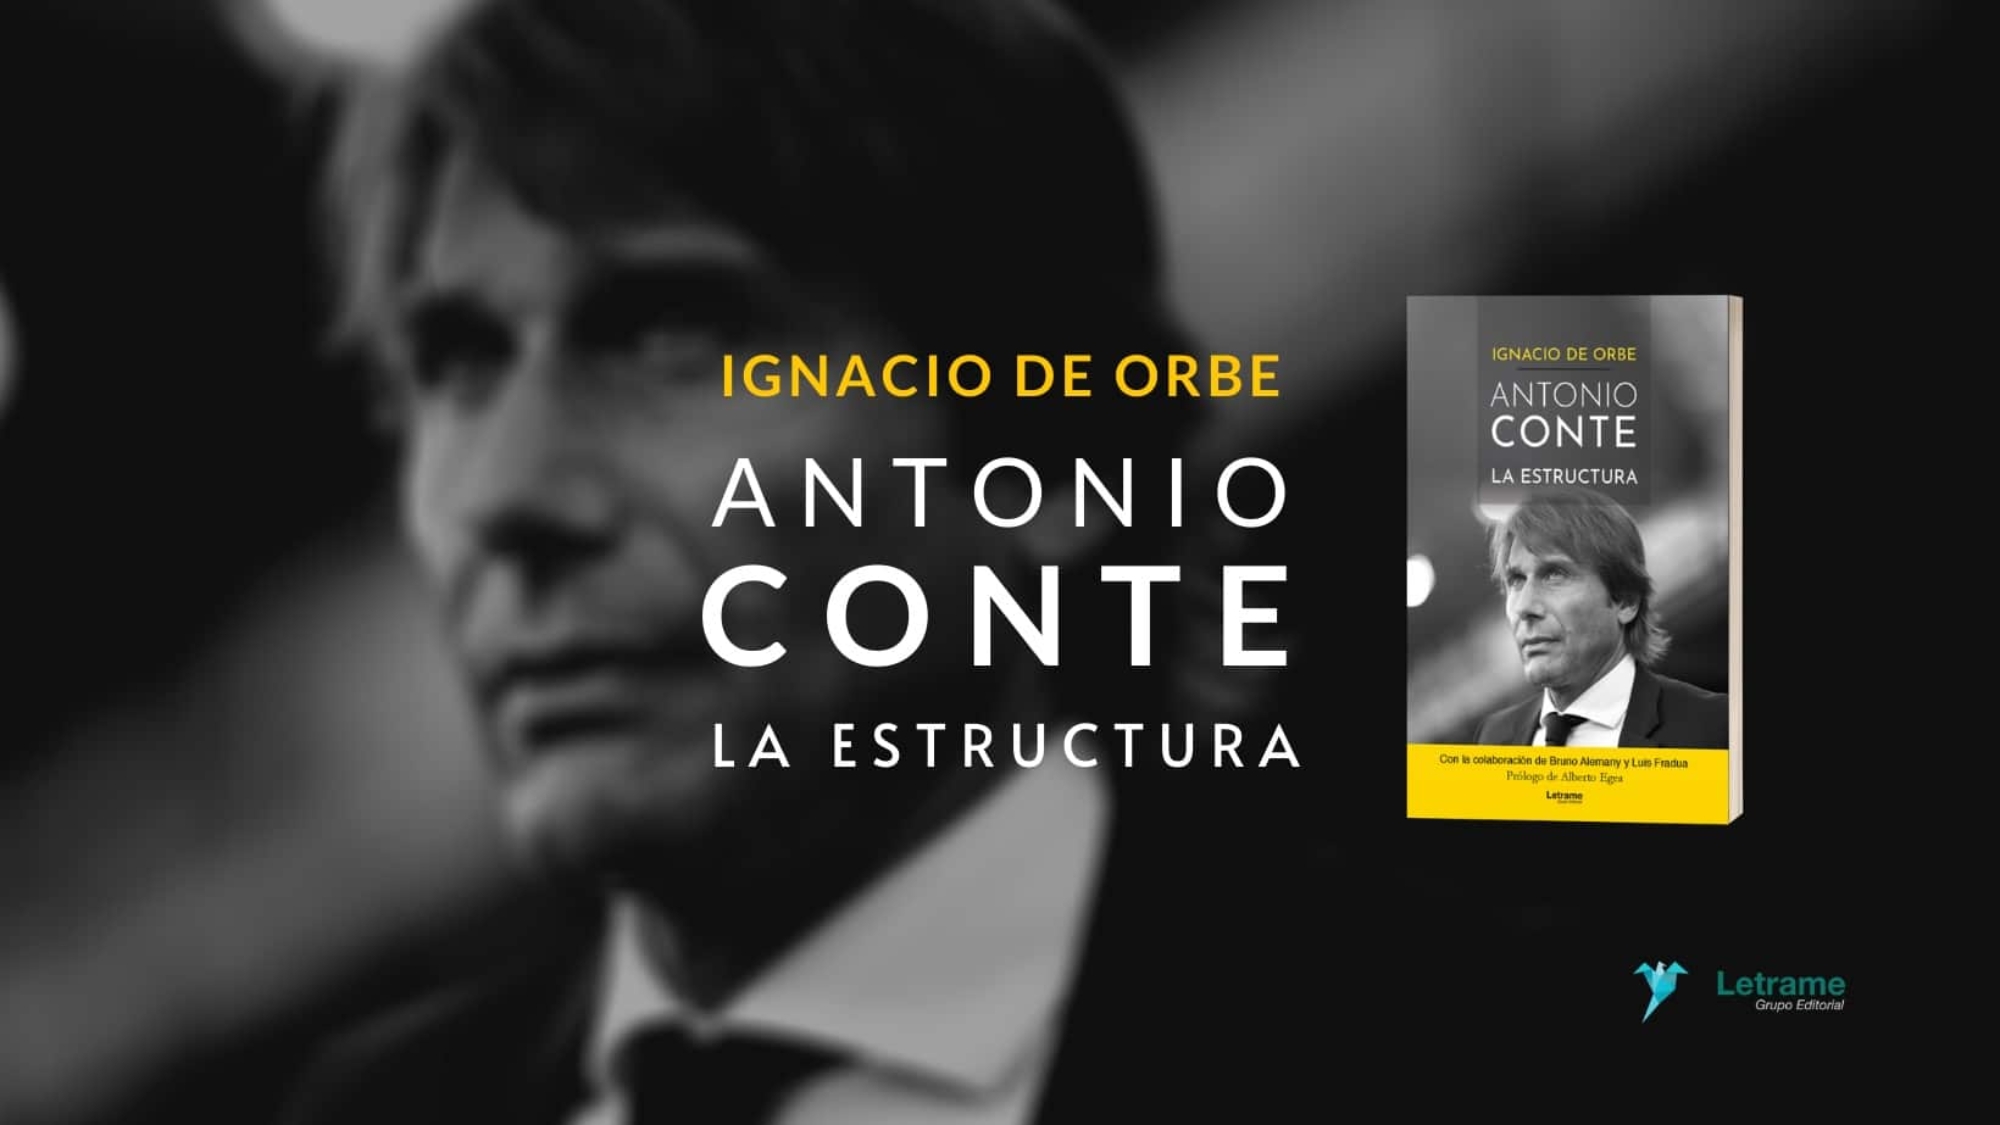 Antonio Conte Letrame (2) (1)-compressed